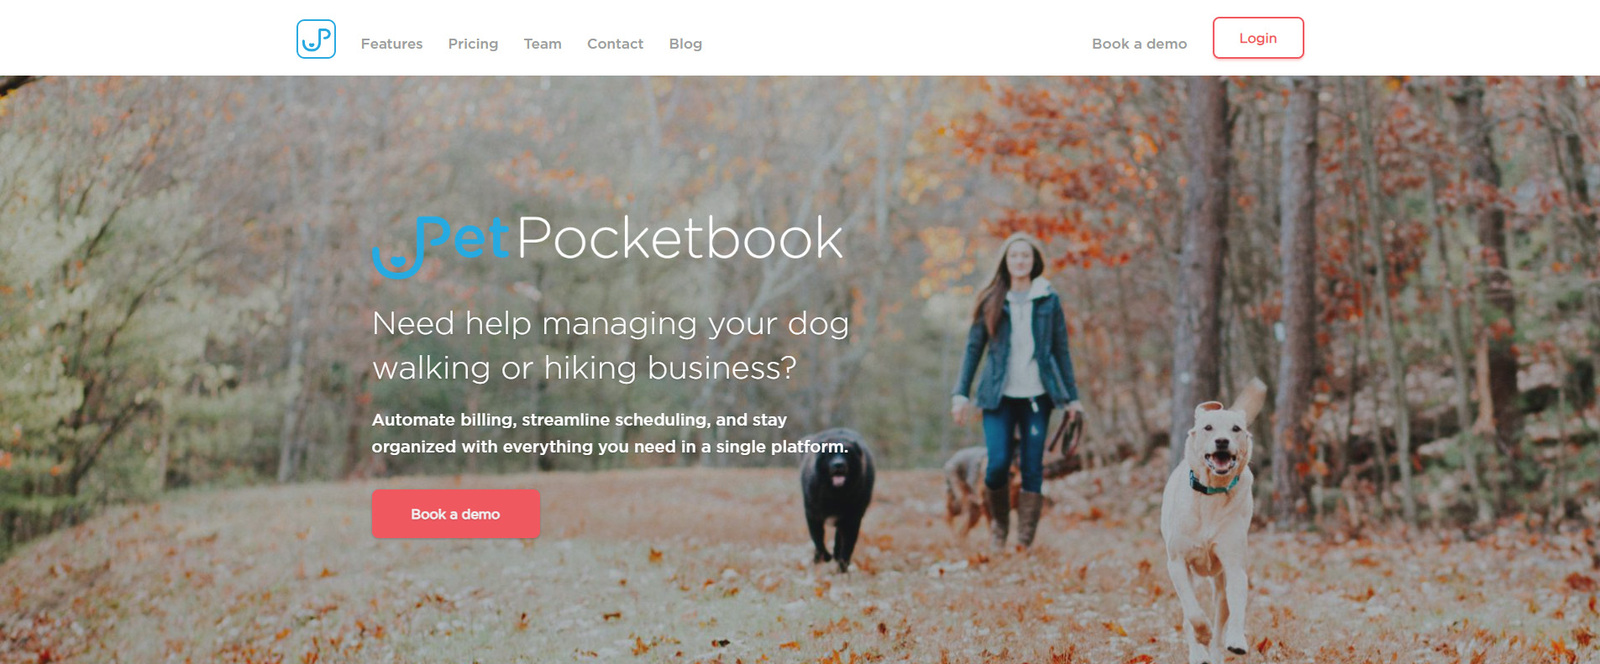 Tampilan PetPocketbook, salah satu opsi perangkat lunak perawatan hewan peliharaan terbaik untuk pejalan kaki hewan peliharaan.